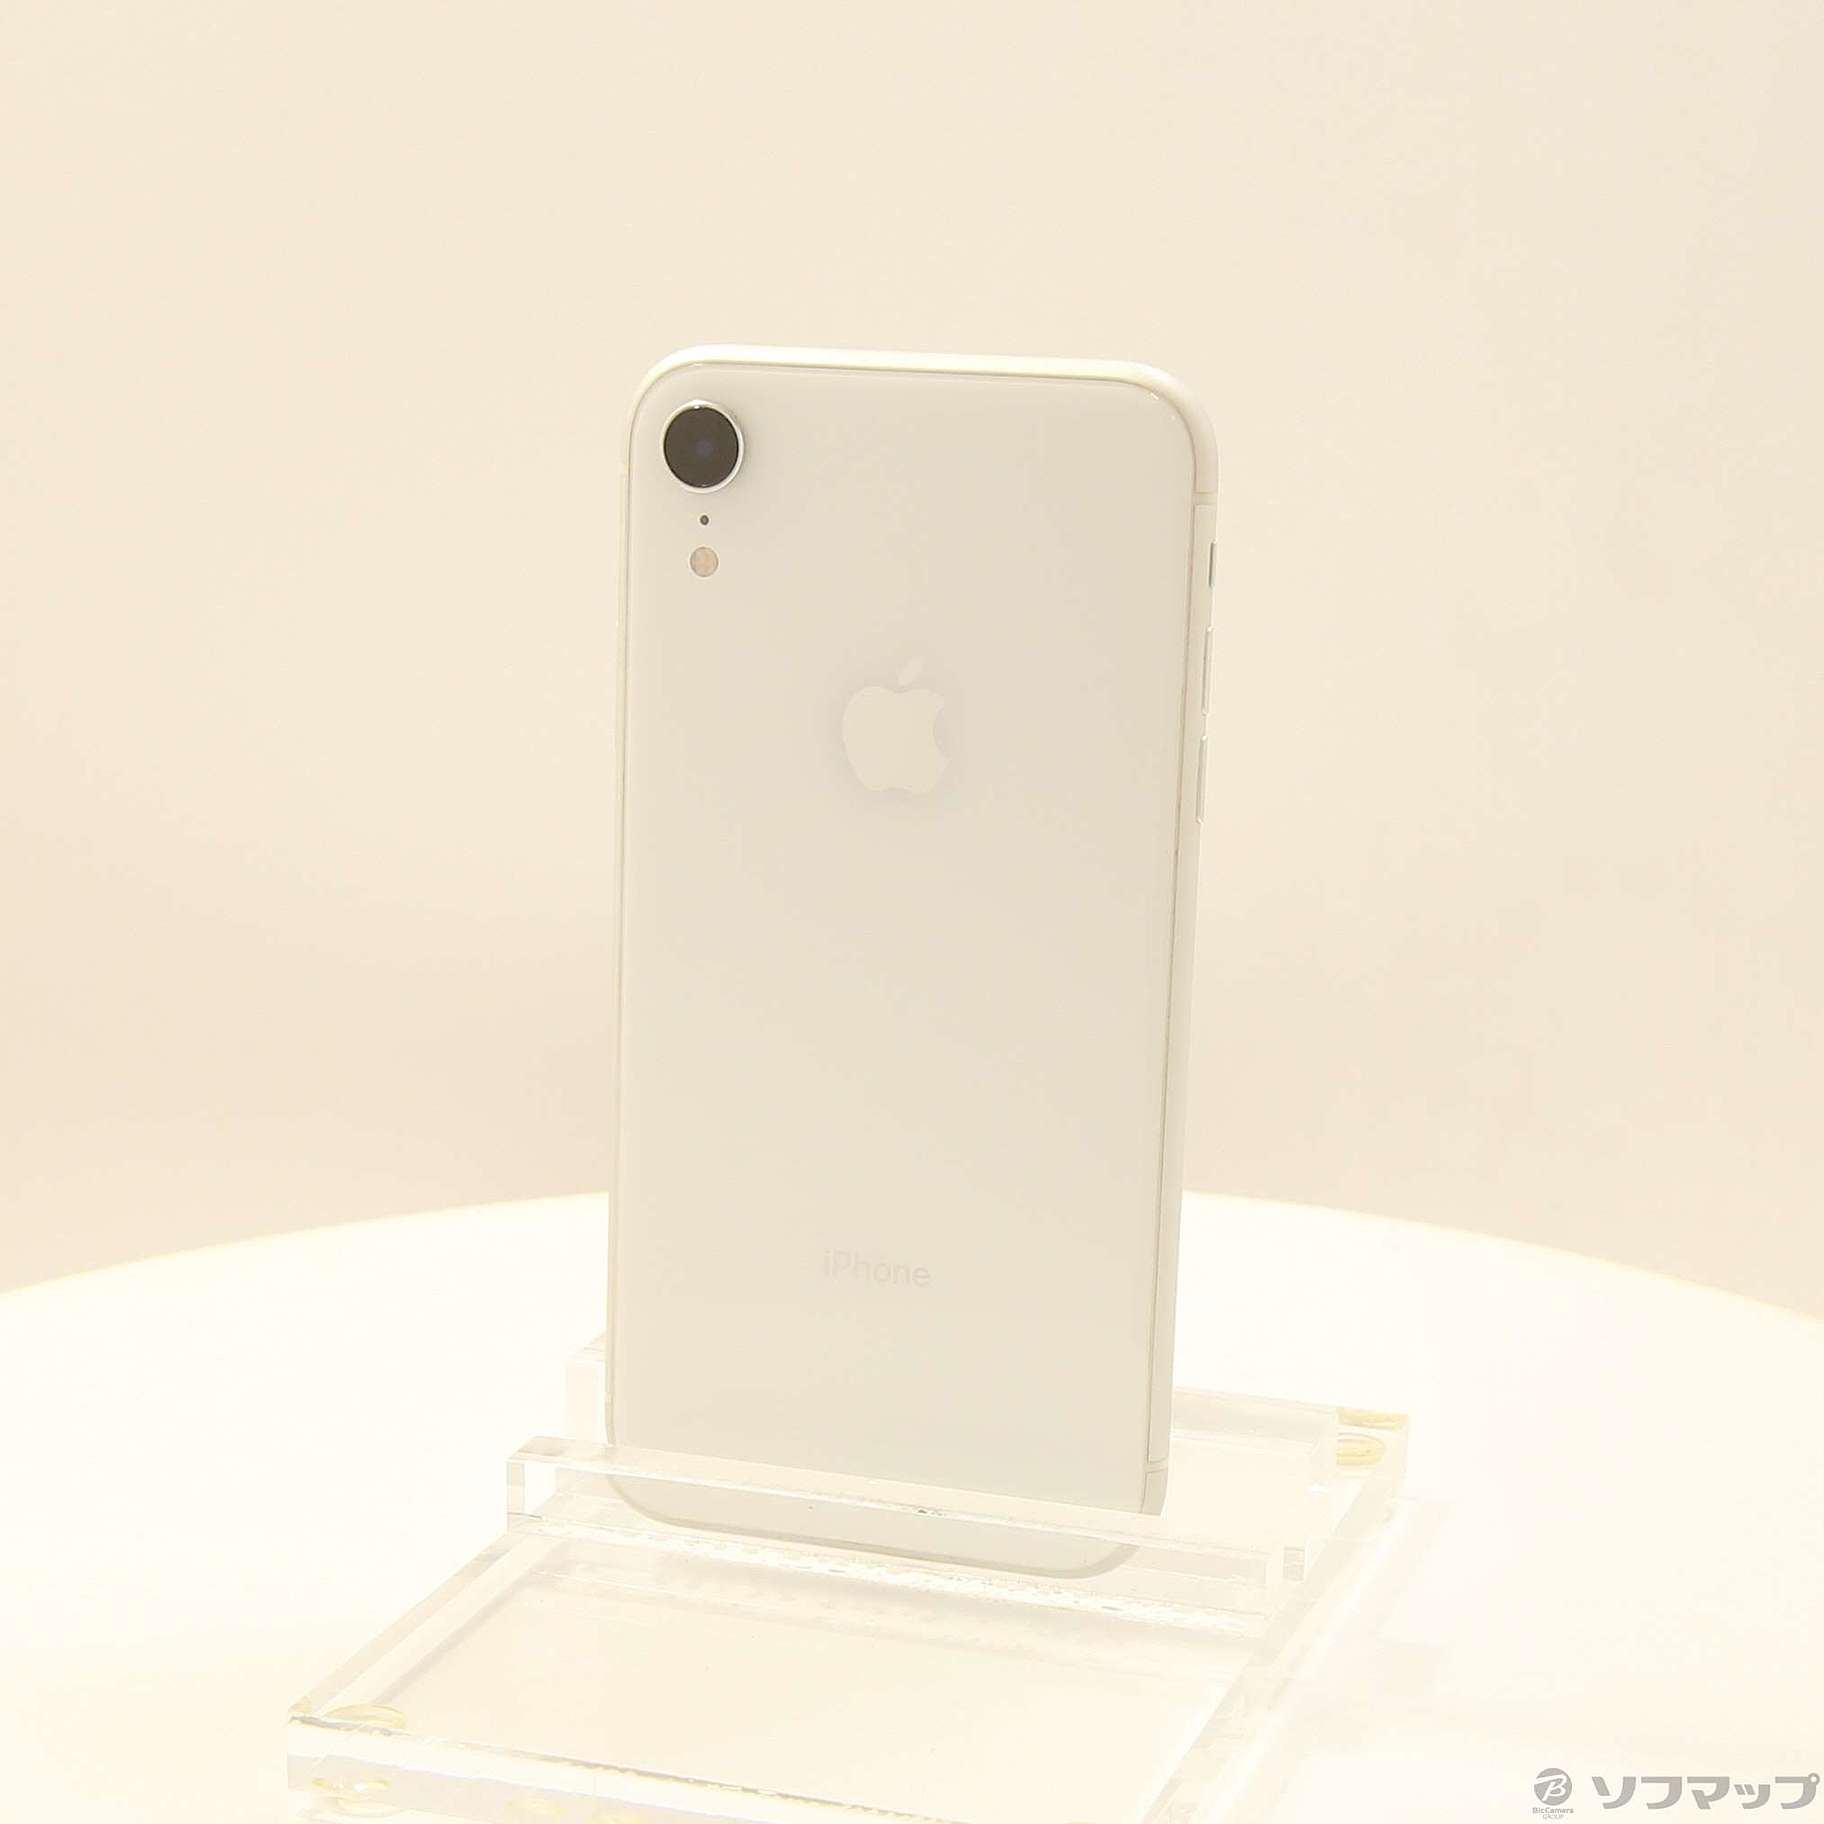 アップル iphonexr b ホワイト - スマートフォン本体